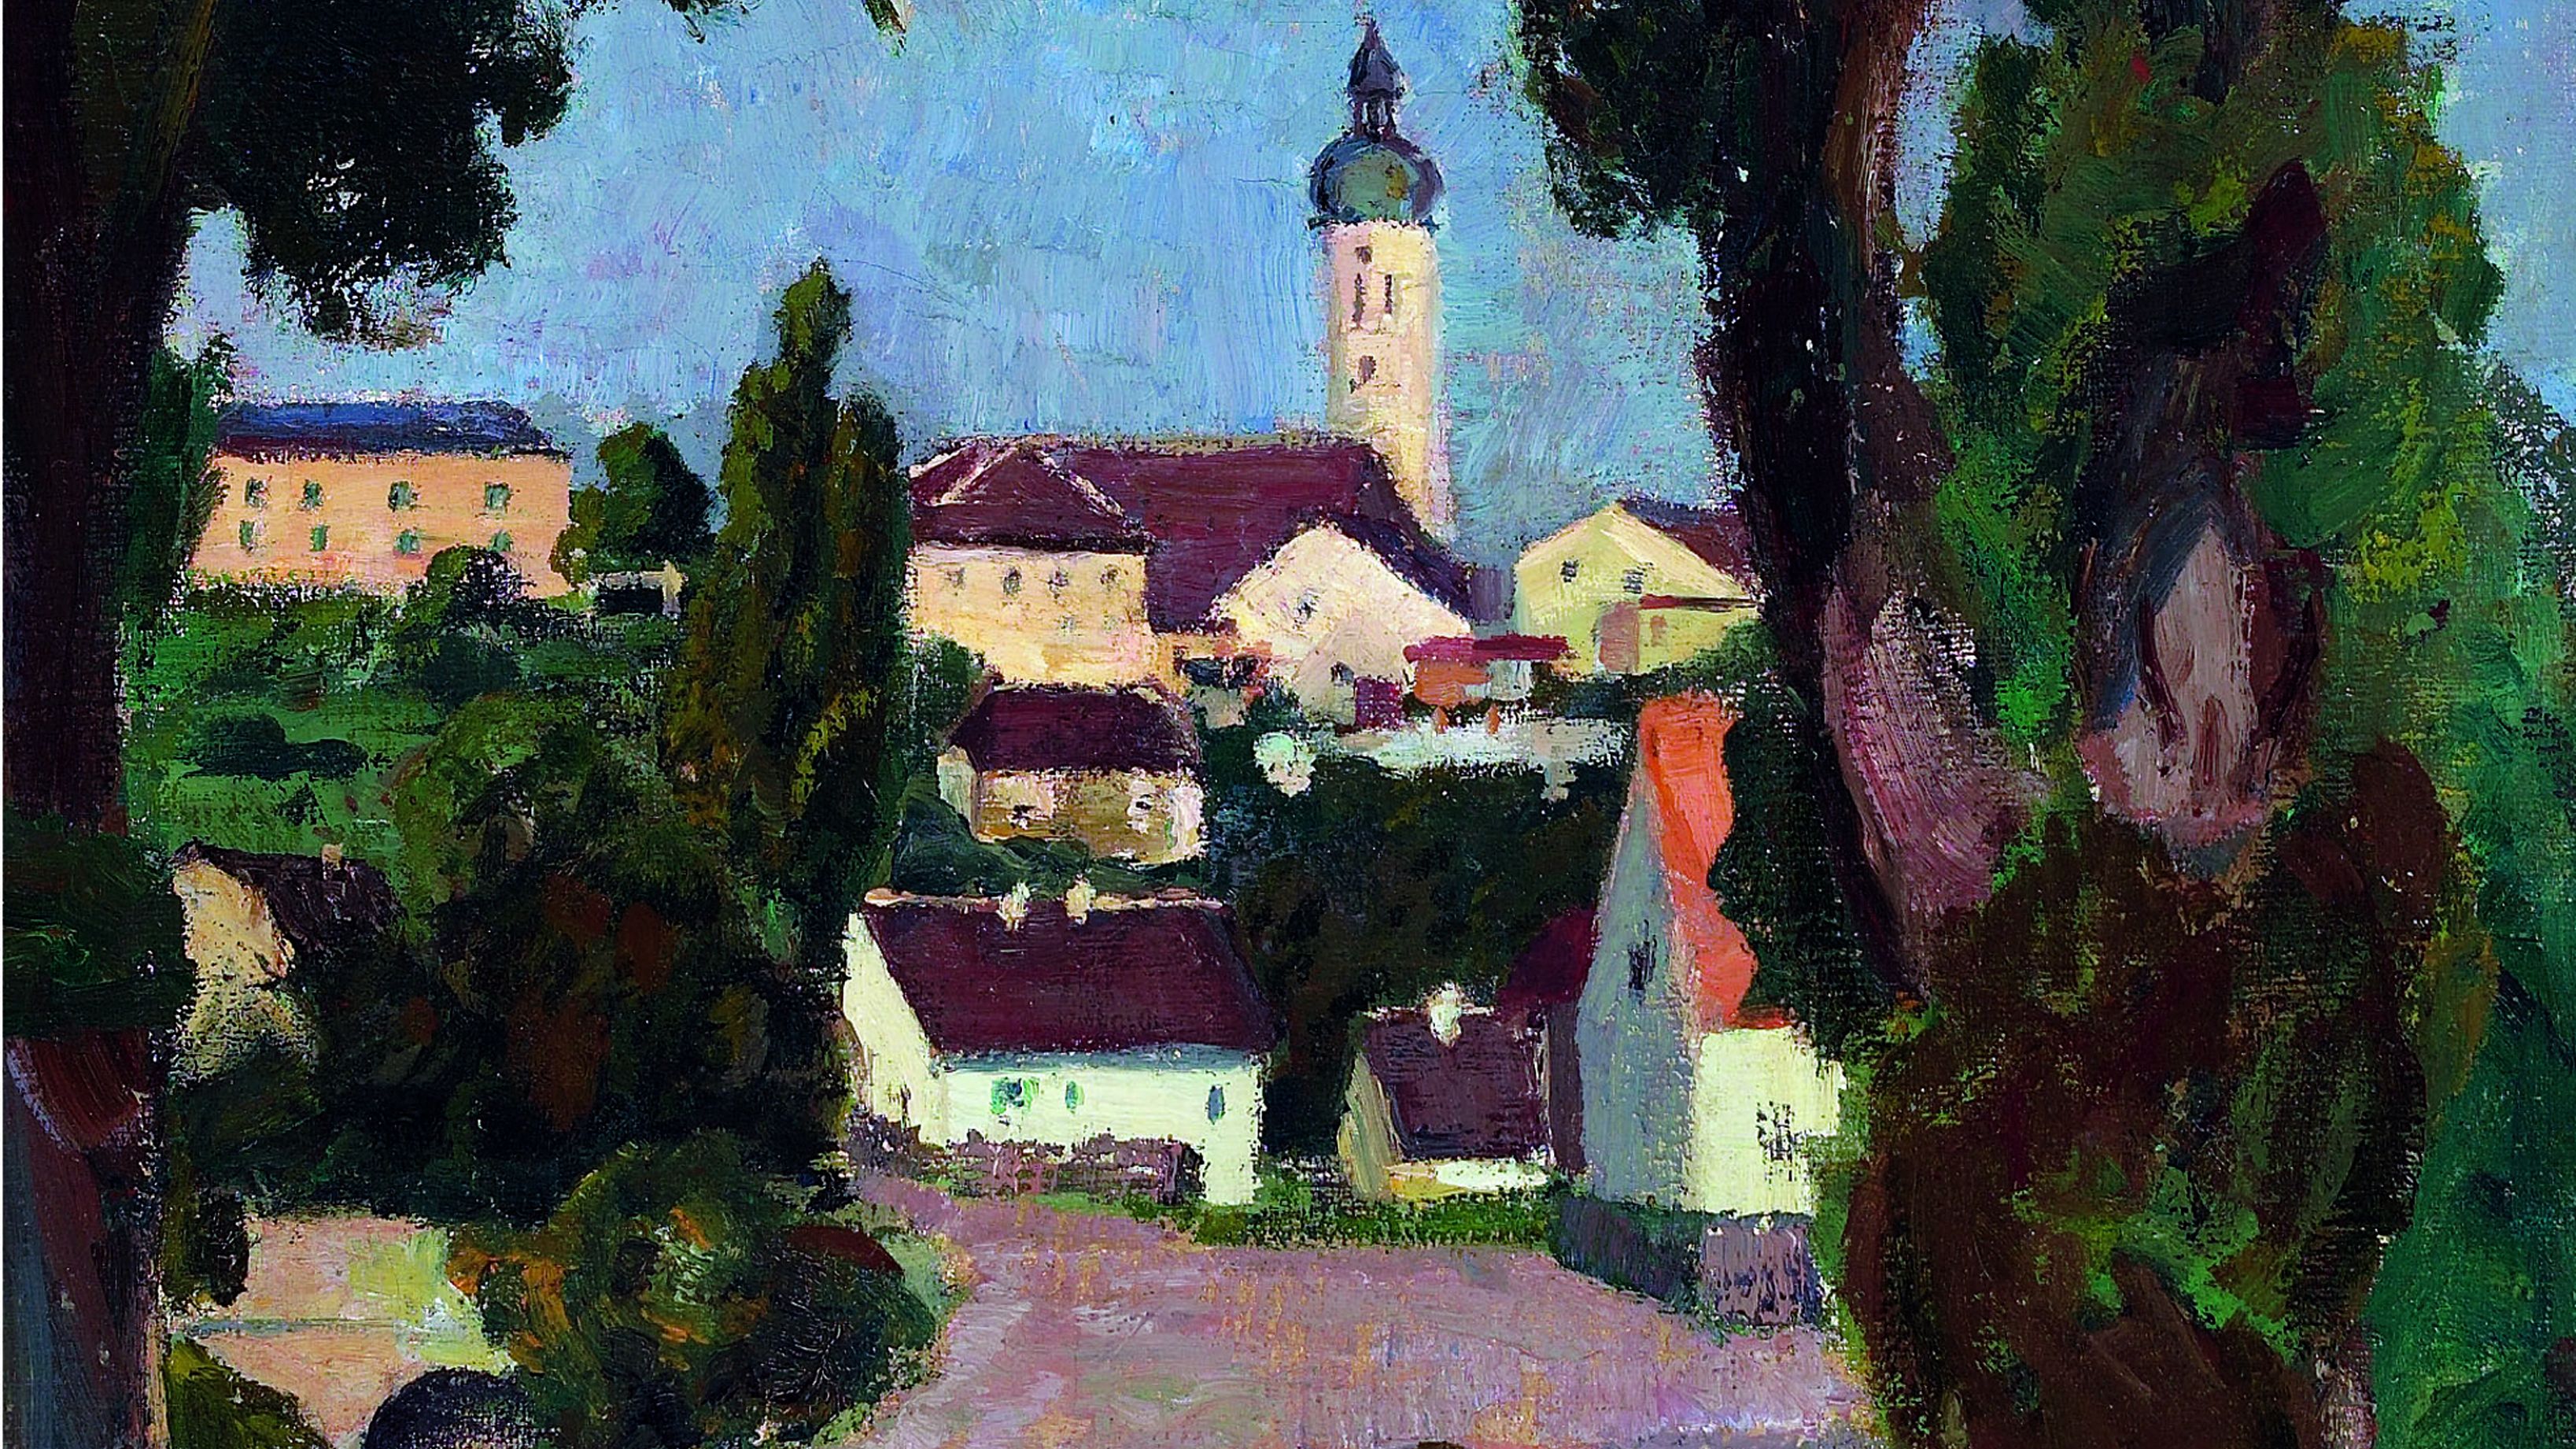 Gemälde von Liliiy Hildebrandt-Uhlmann "Blick auf Dachau vom Unteren Markt" zeigt Dächer und Häuser einer Stadt